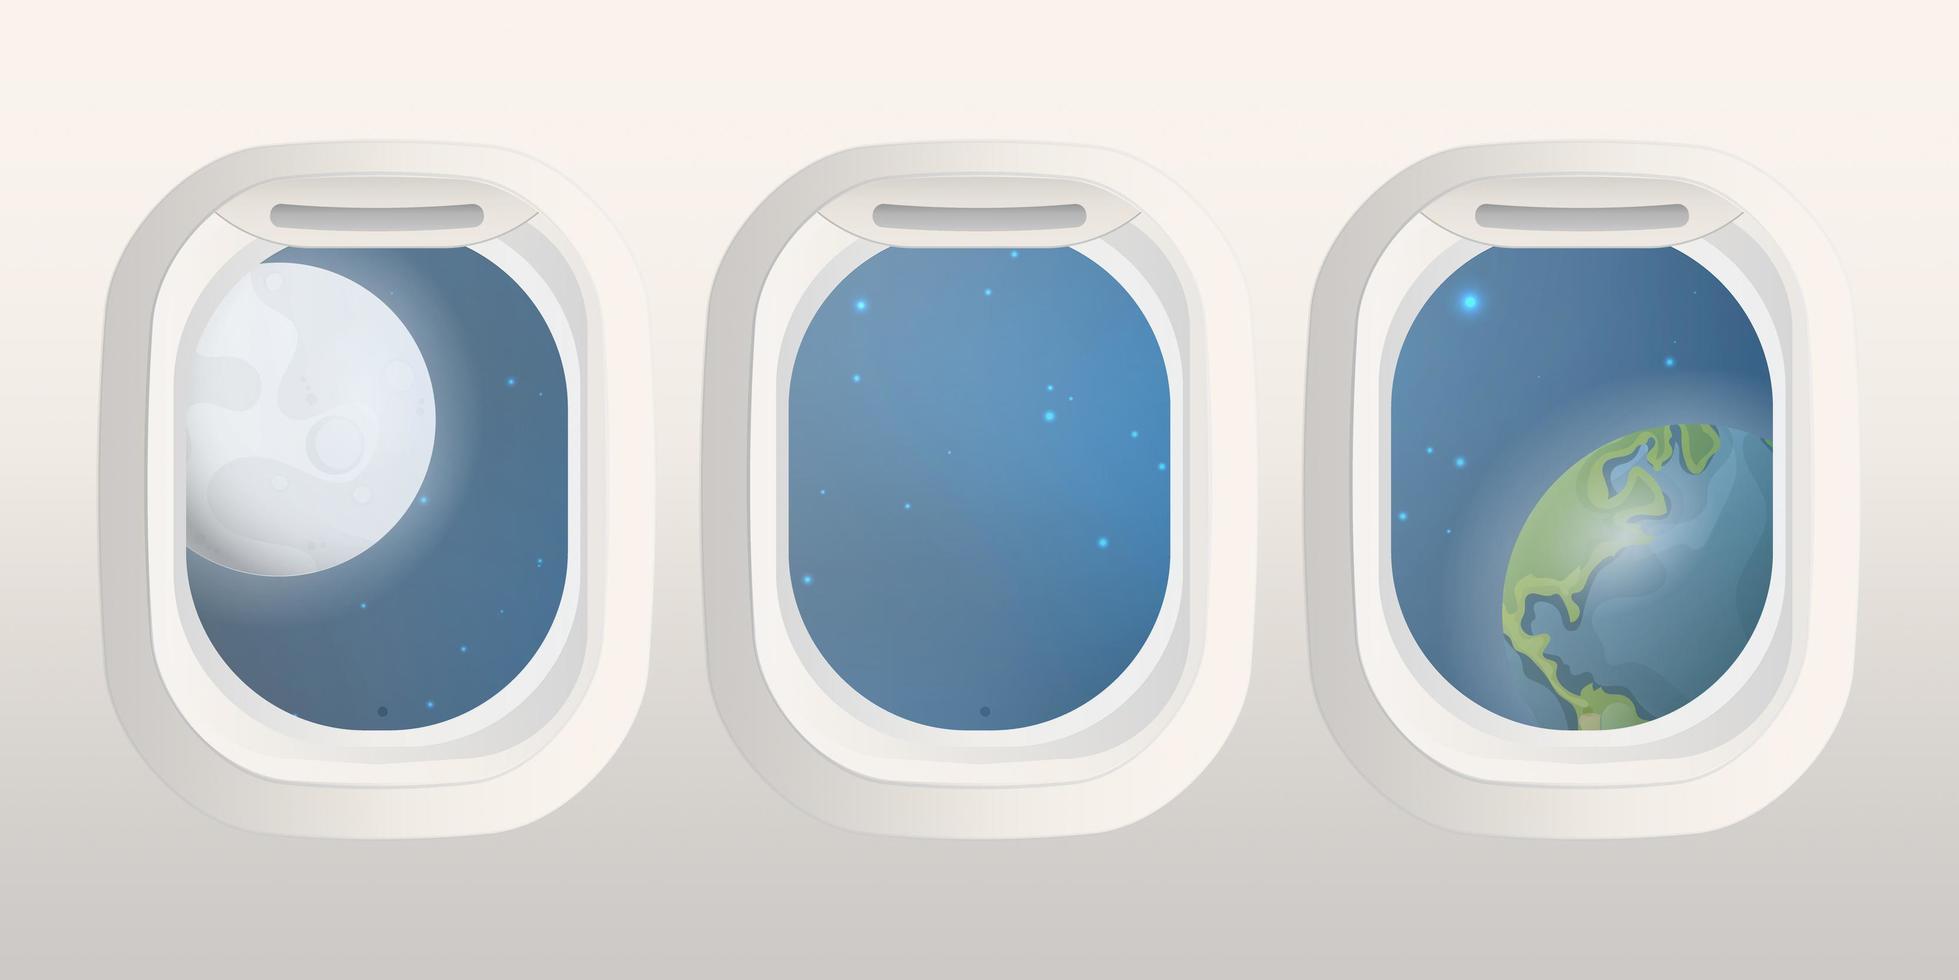 vigias retangulares realistas com vista para o espaço. avião e janela do ônibus espacial. ilustração vetorial vetor